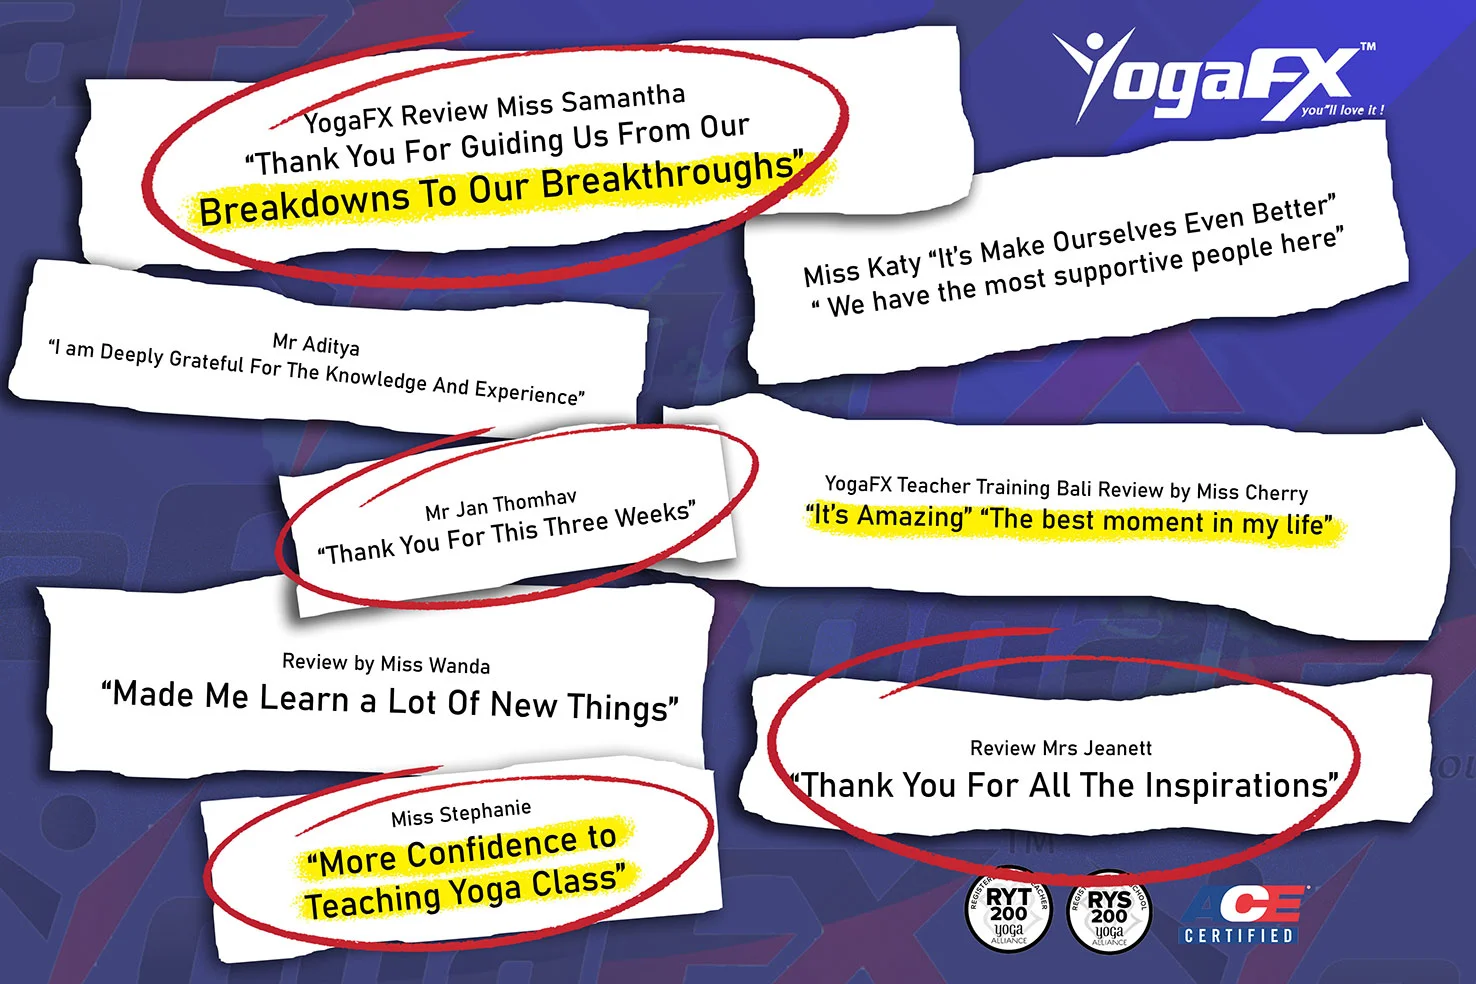 bikram yoga teacher training - YogaFX